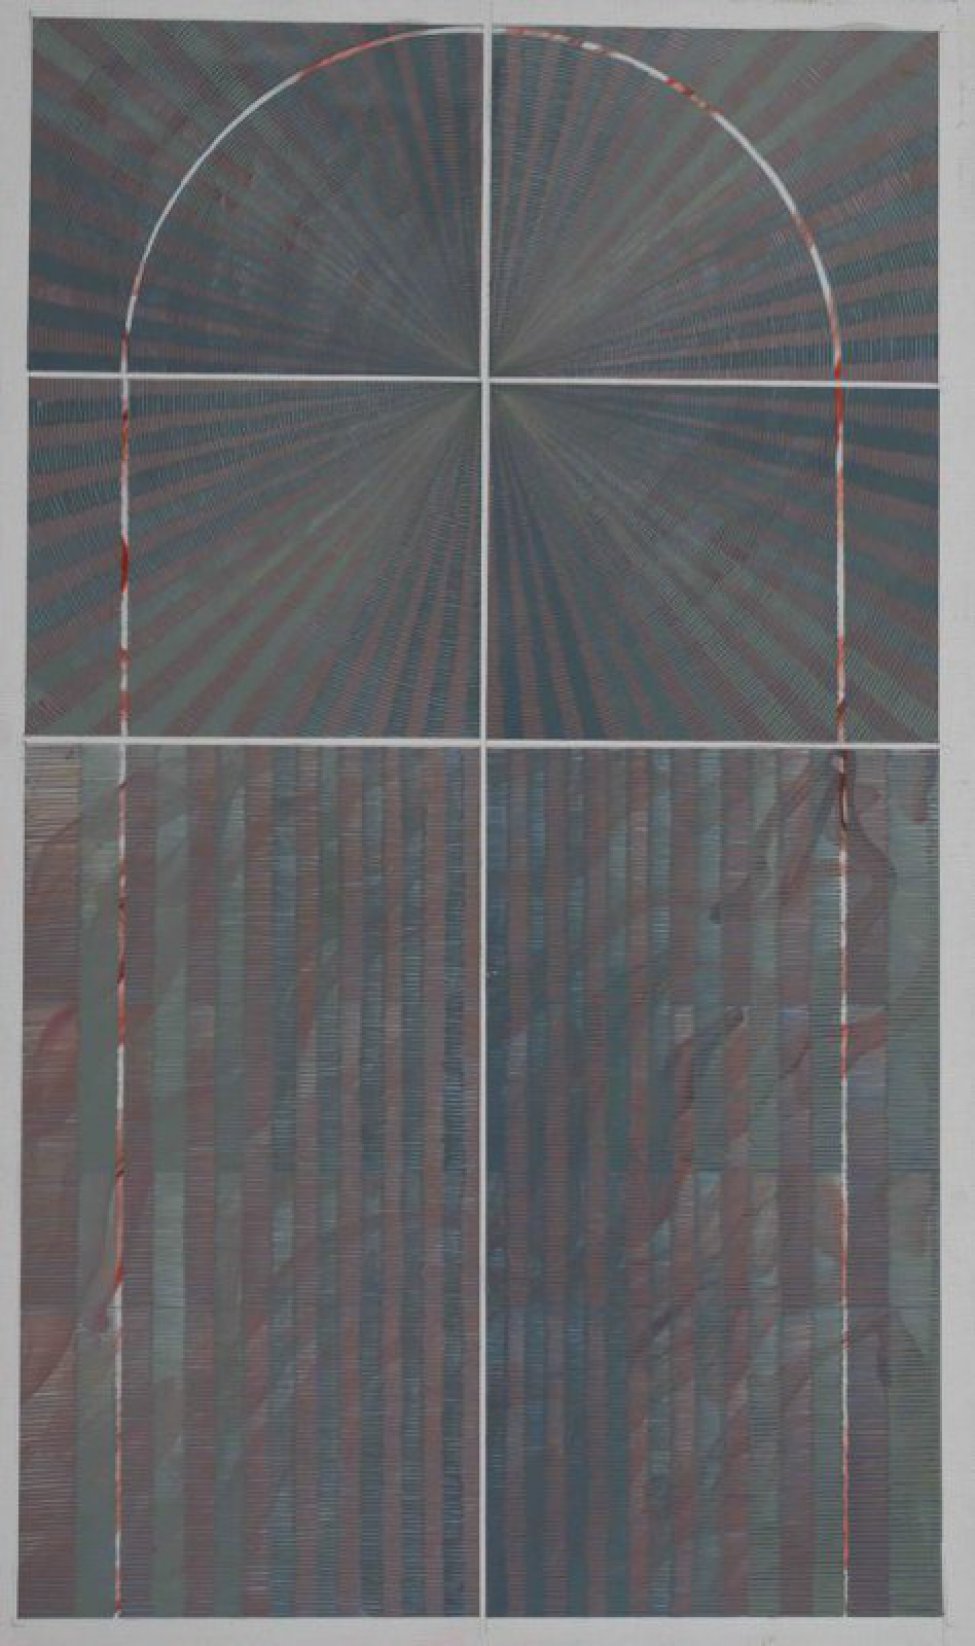 Композиция выполнена в голубовато-серой гамме, поделена на 6 «частей», объединенных светлой аркообразной "рамой". В верхней половине композиции из центральной точки расходятся лучи.